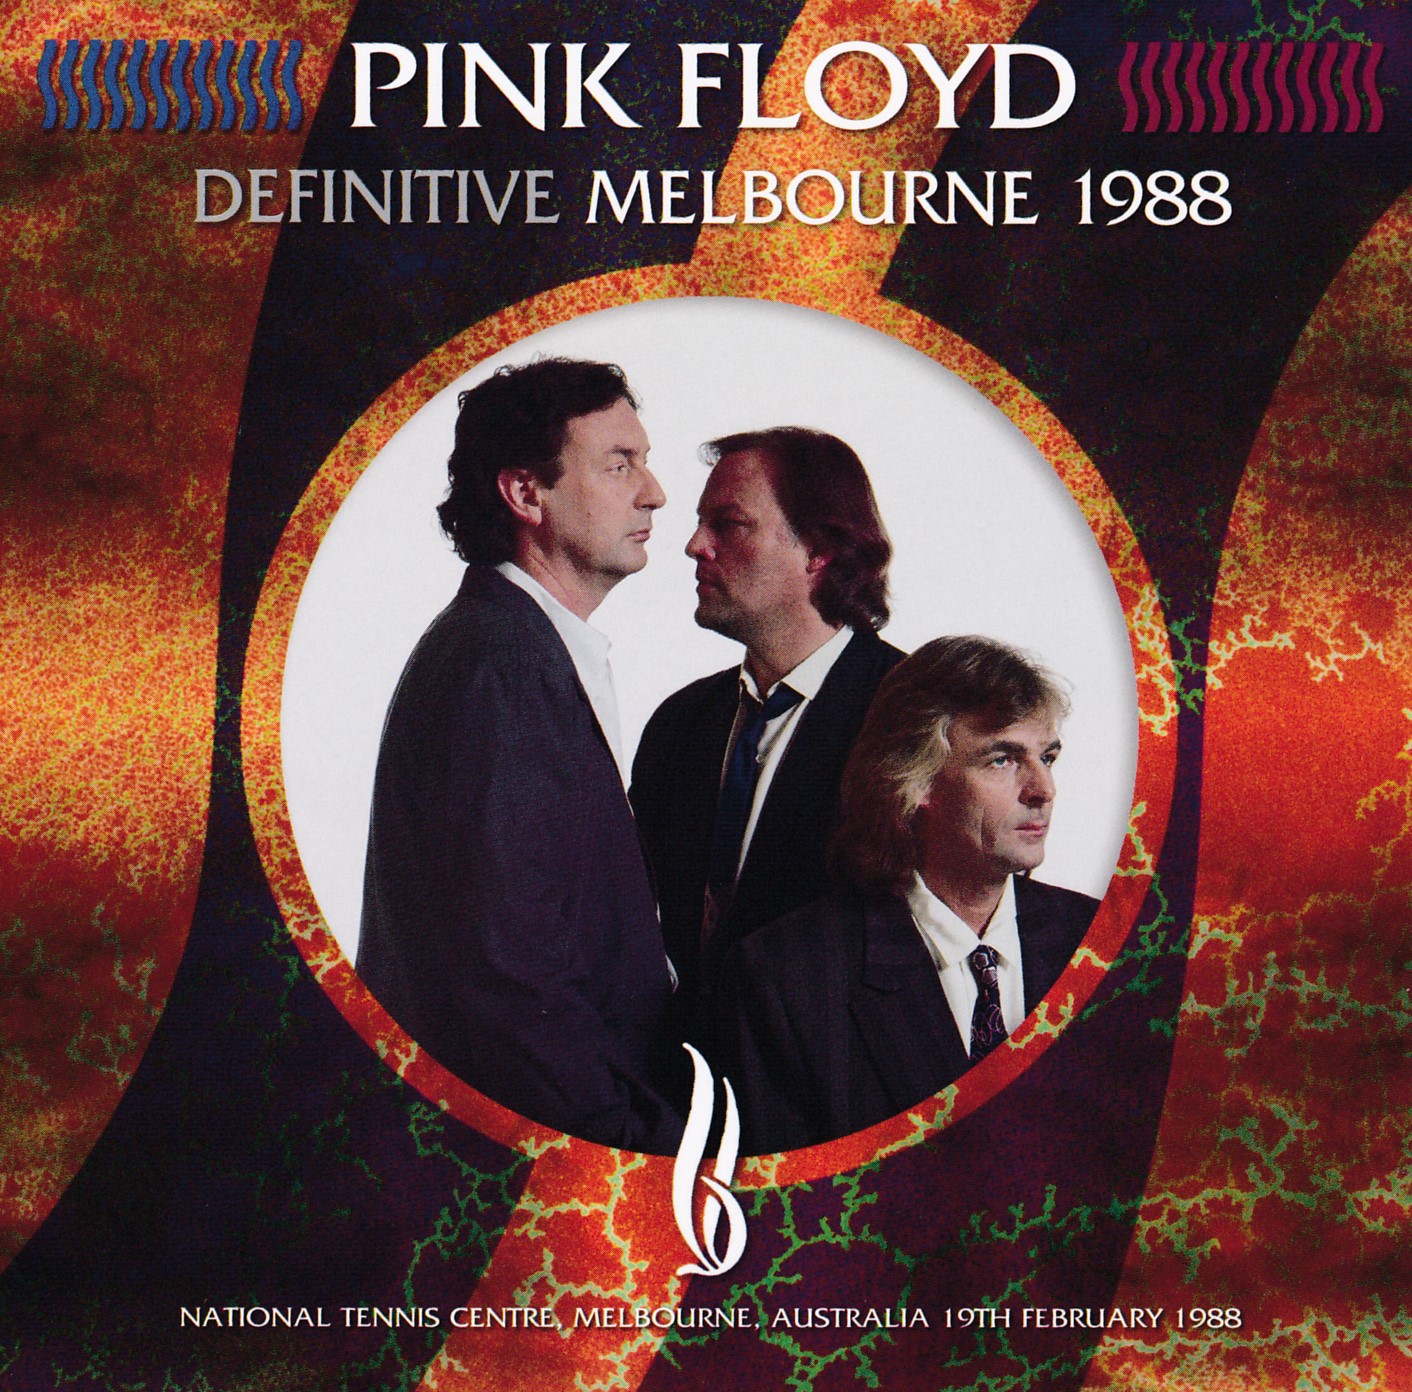 Pink Floyd - Definitive Melbourne 1988 (1988-02-19) SBD